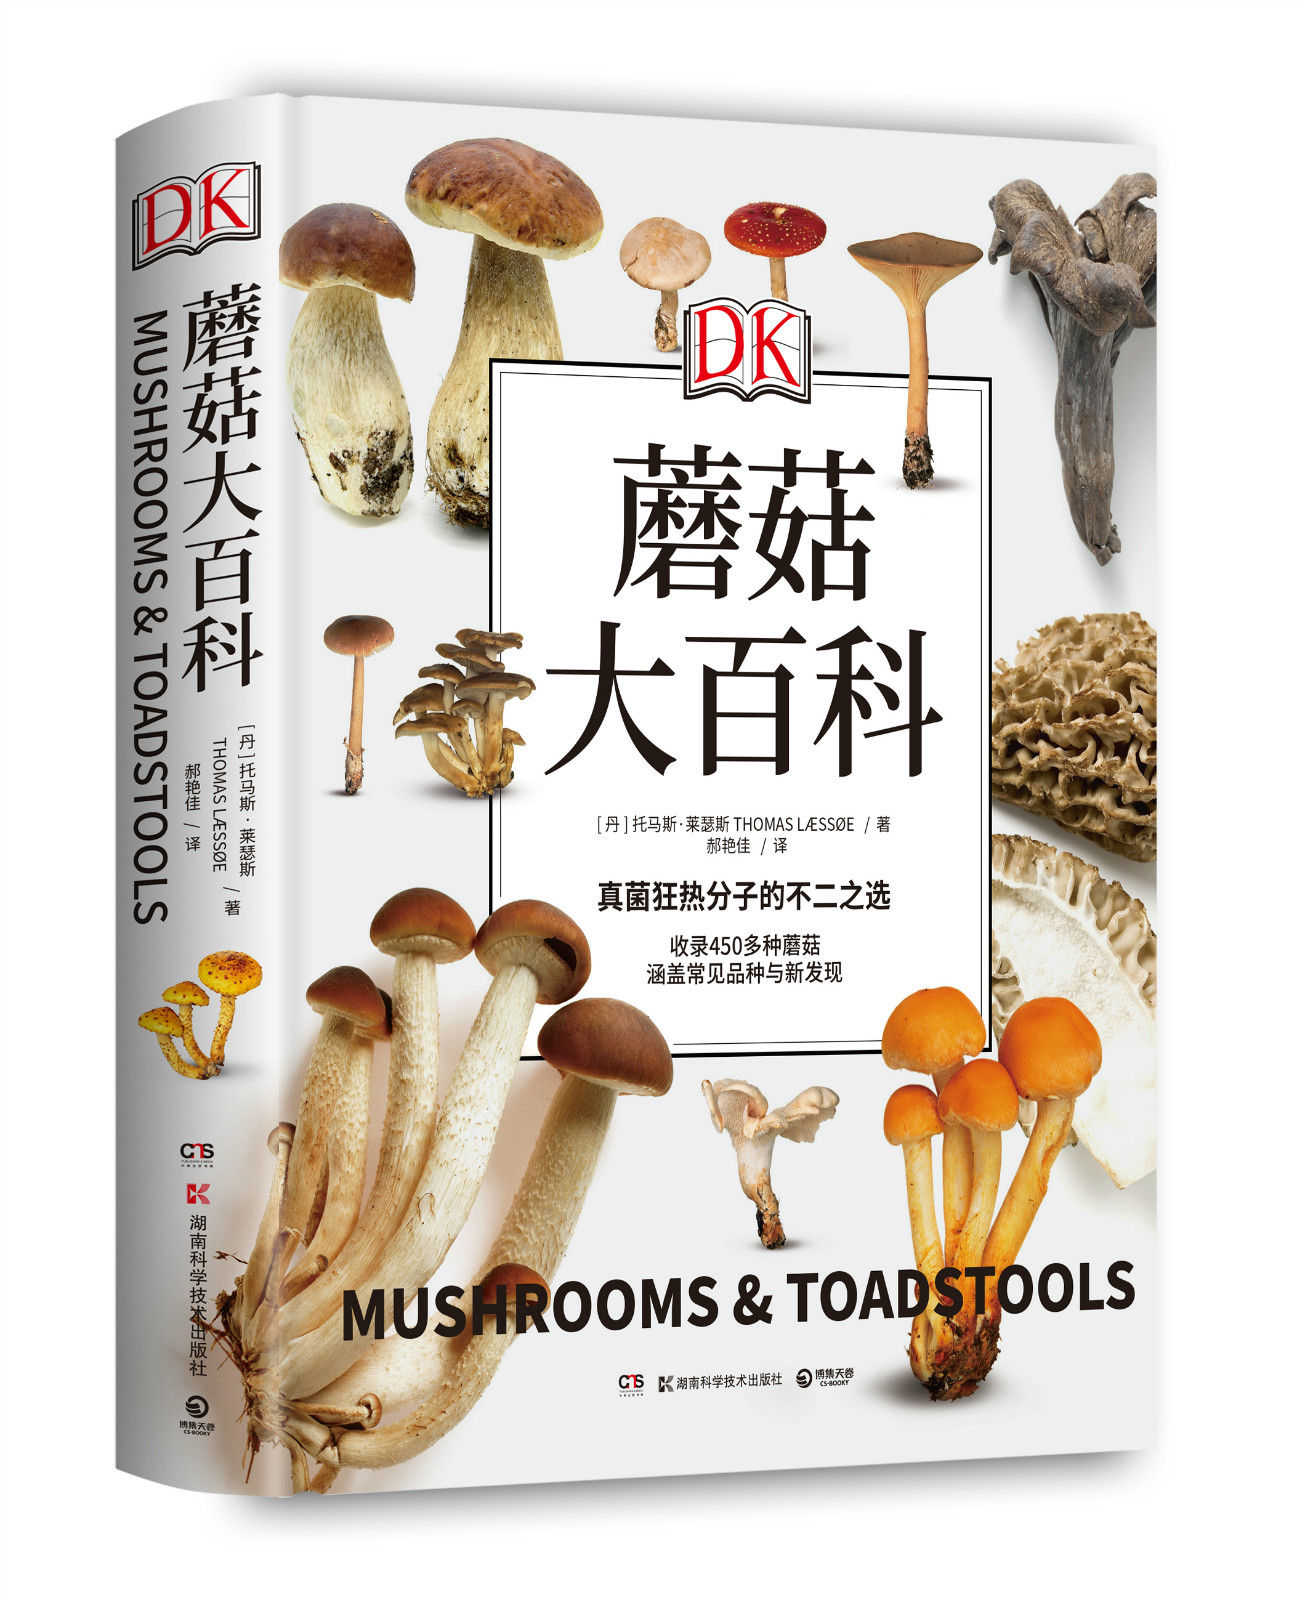 DK蘑菇大百科托马斯莱瑟斯精装插图视觉工具书经典可以放在书架上的蘑菇博物馆青少年科普百科450多种野生蘑菇课外读物正版书籍